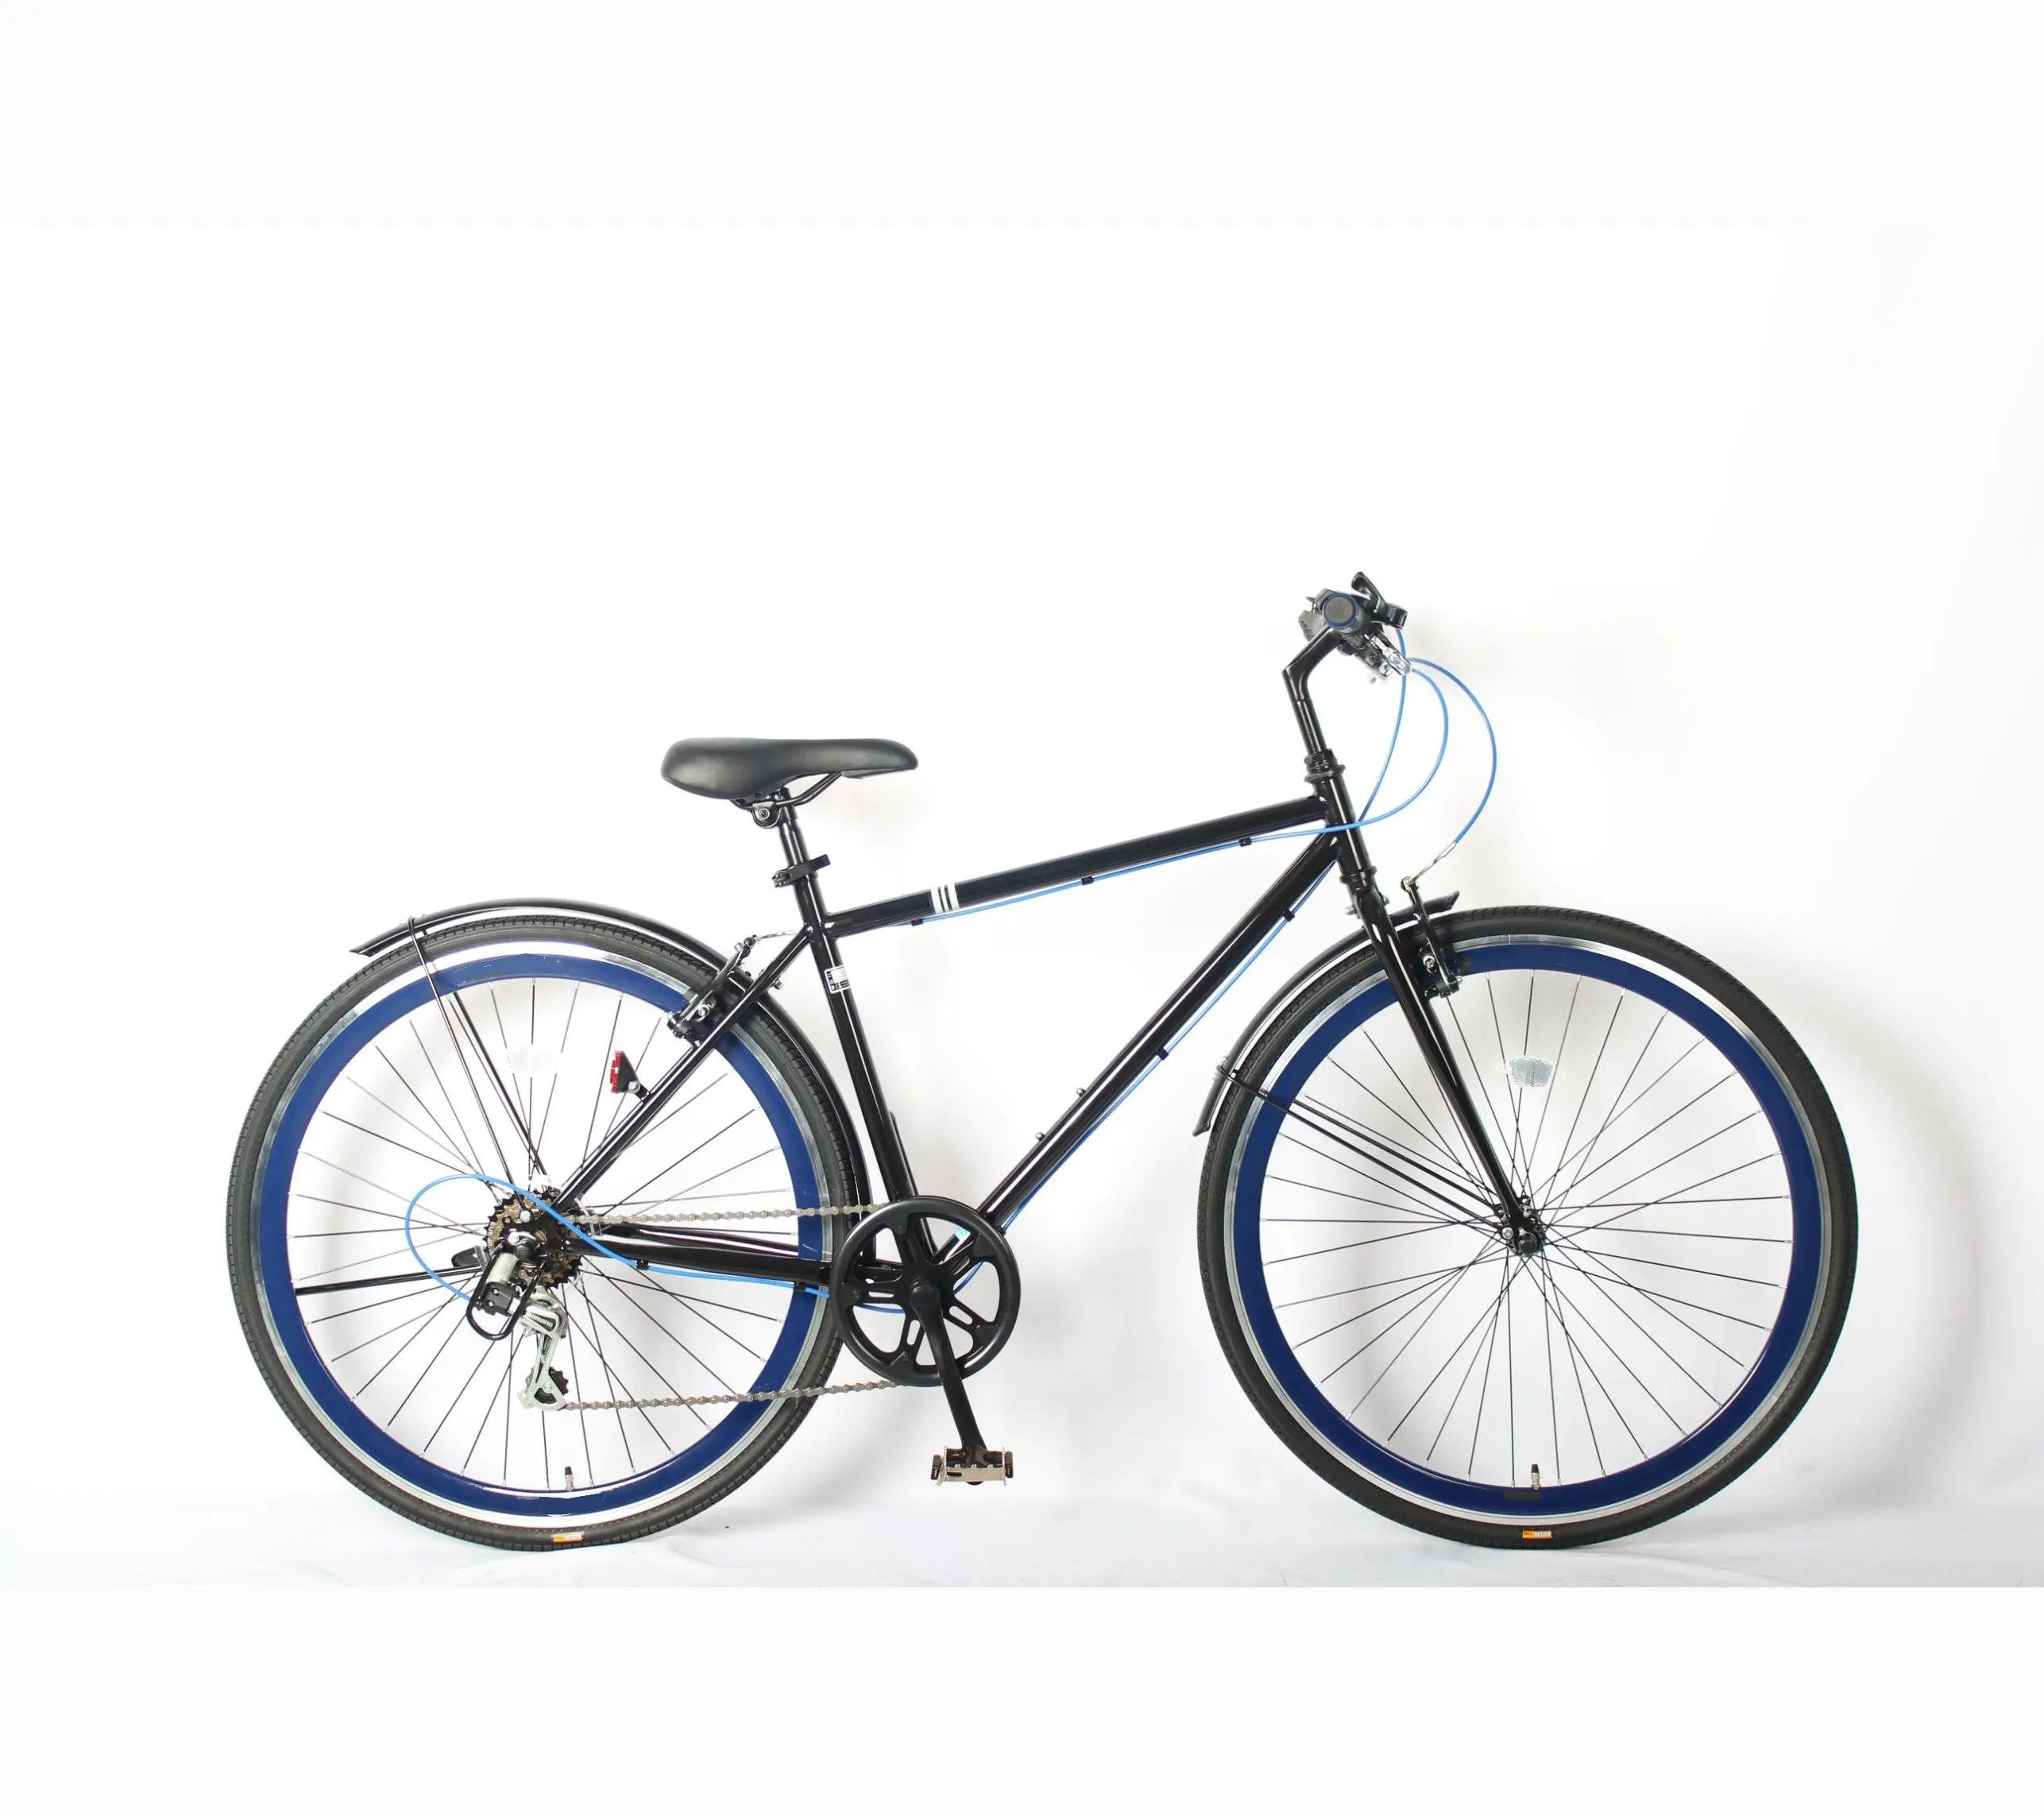 फैक्टरी प्रत्यक्ष बिक्री वयस्क साइकिल विंटेज रोड बाइक वैरिएबल स्पीड 700C बाइक